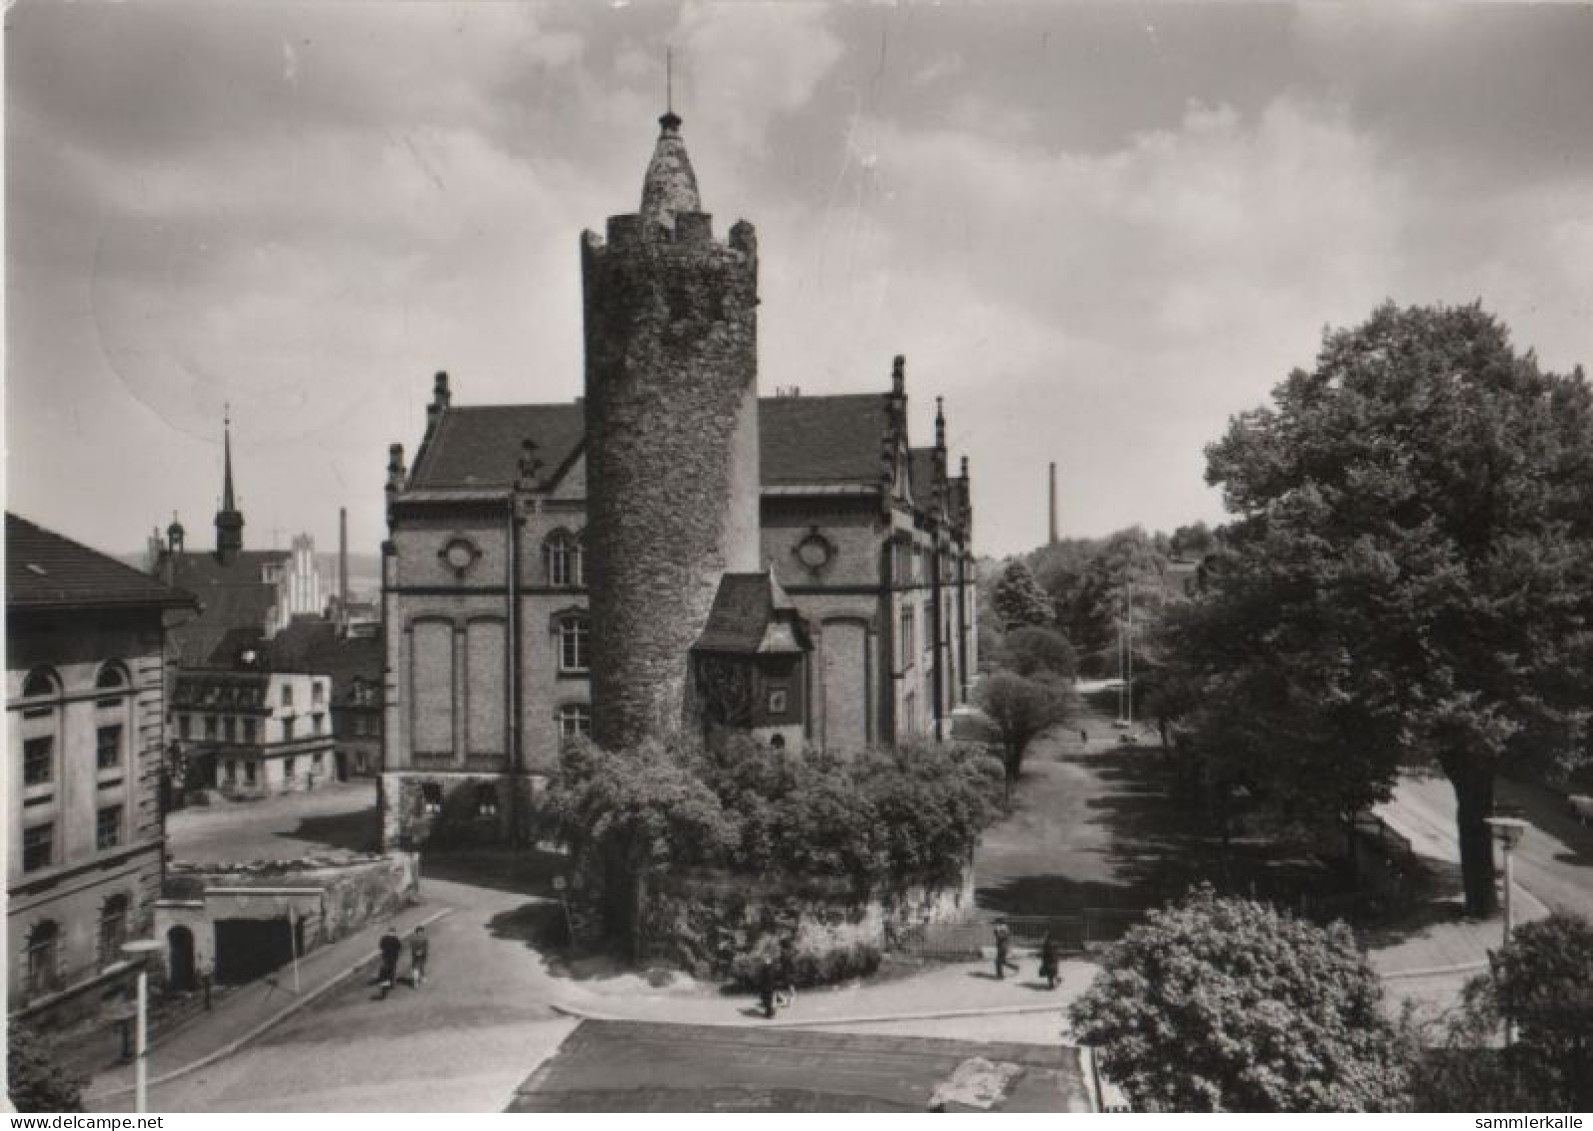 83689 - Pössneck - Weisser Turm Mit Schule - 1979 - Pössneck